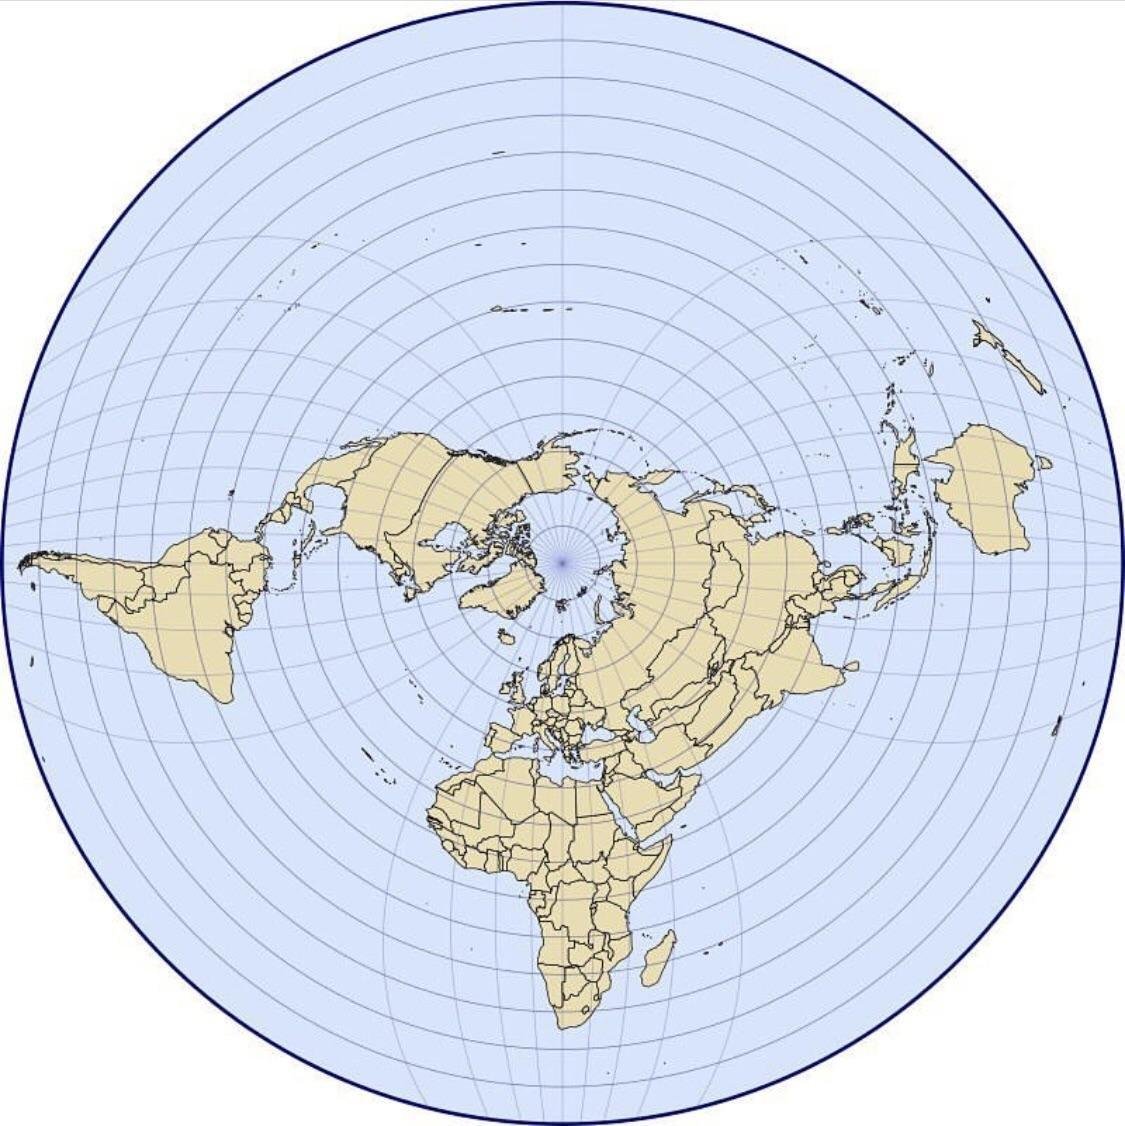 Onko olemassa kartta, joka näyttää jokaisen maan oikeassa suhteellisessa  koossaan?